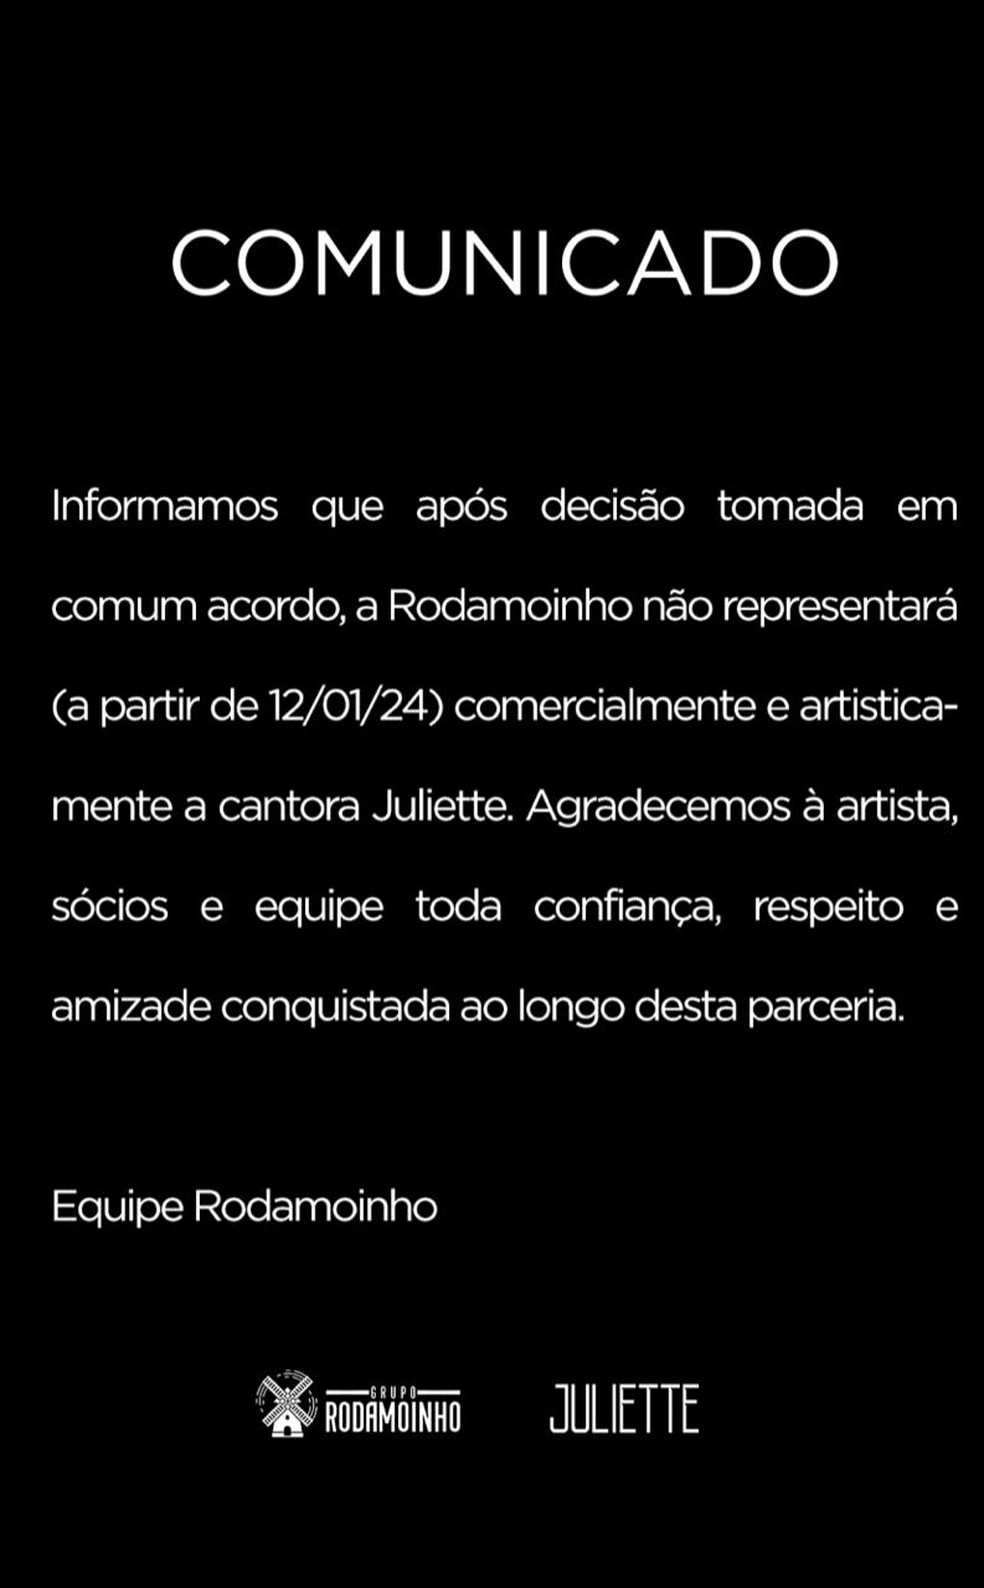 Comunicado da Rodamoinho sobre o fim da parceria com Juliette — Foto: Divulgação/Rodamoinho/BPMCom